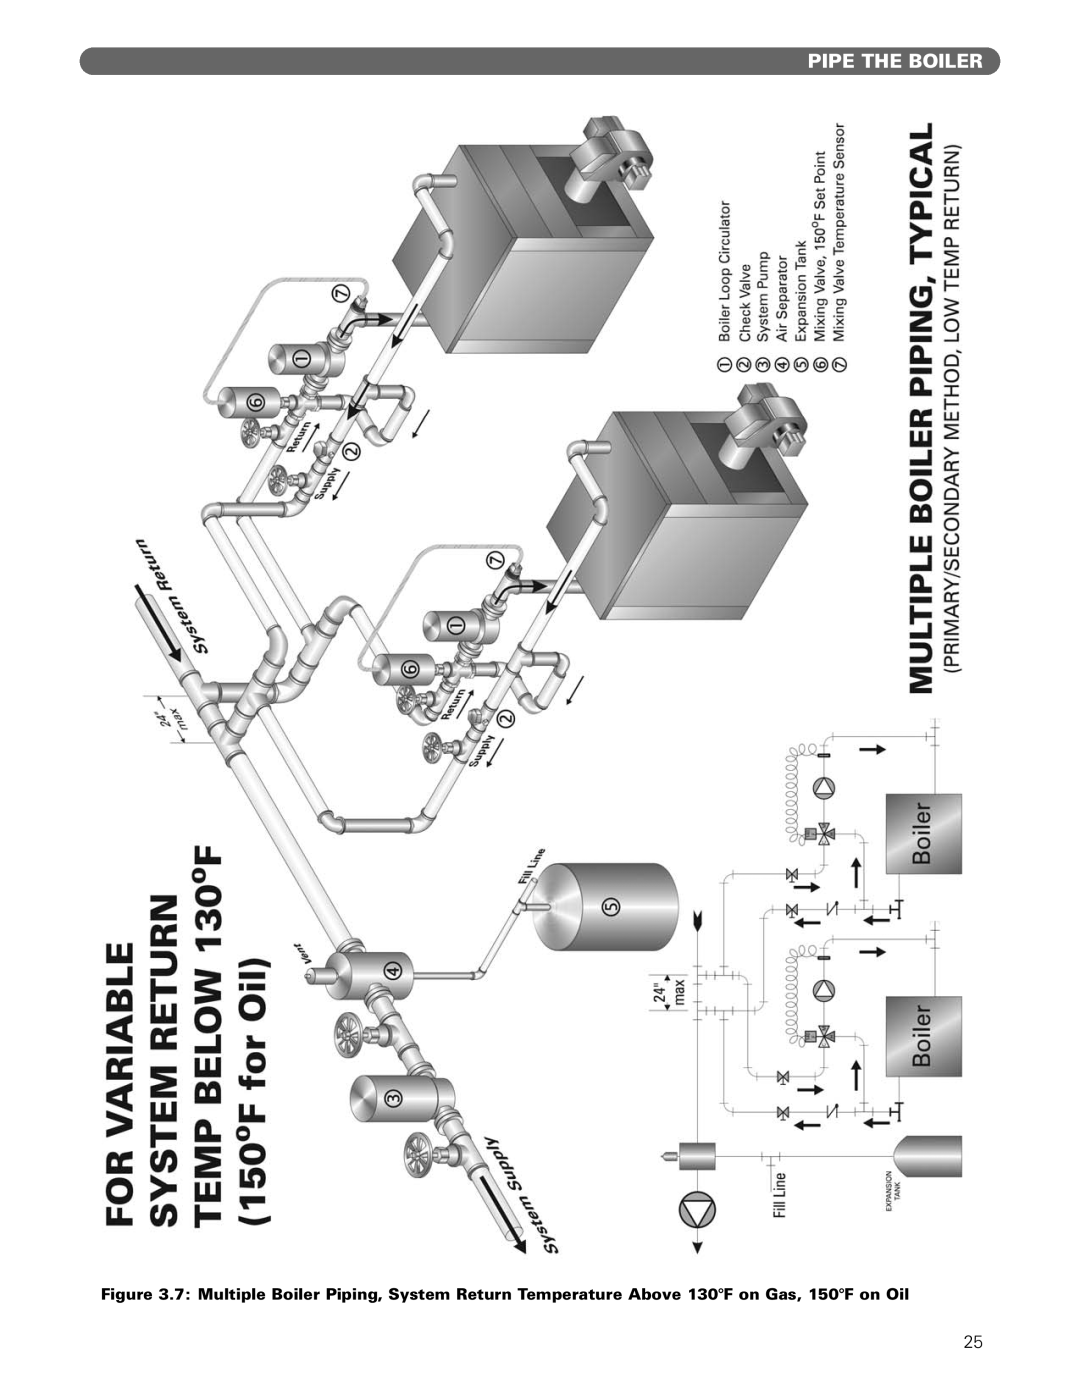 PB Heat Gas/Oil Boilers manual Pipe The Boiler 